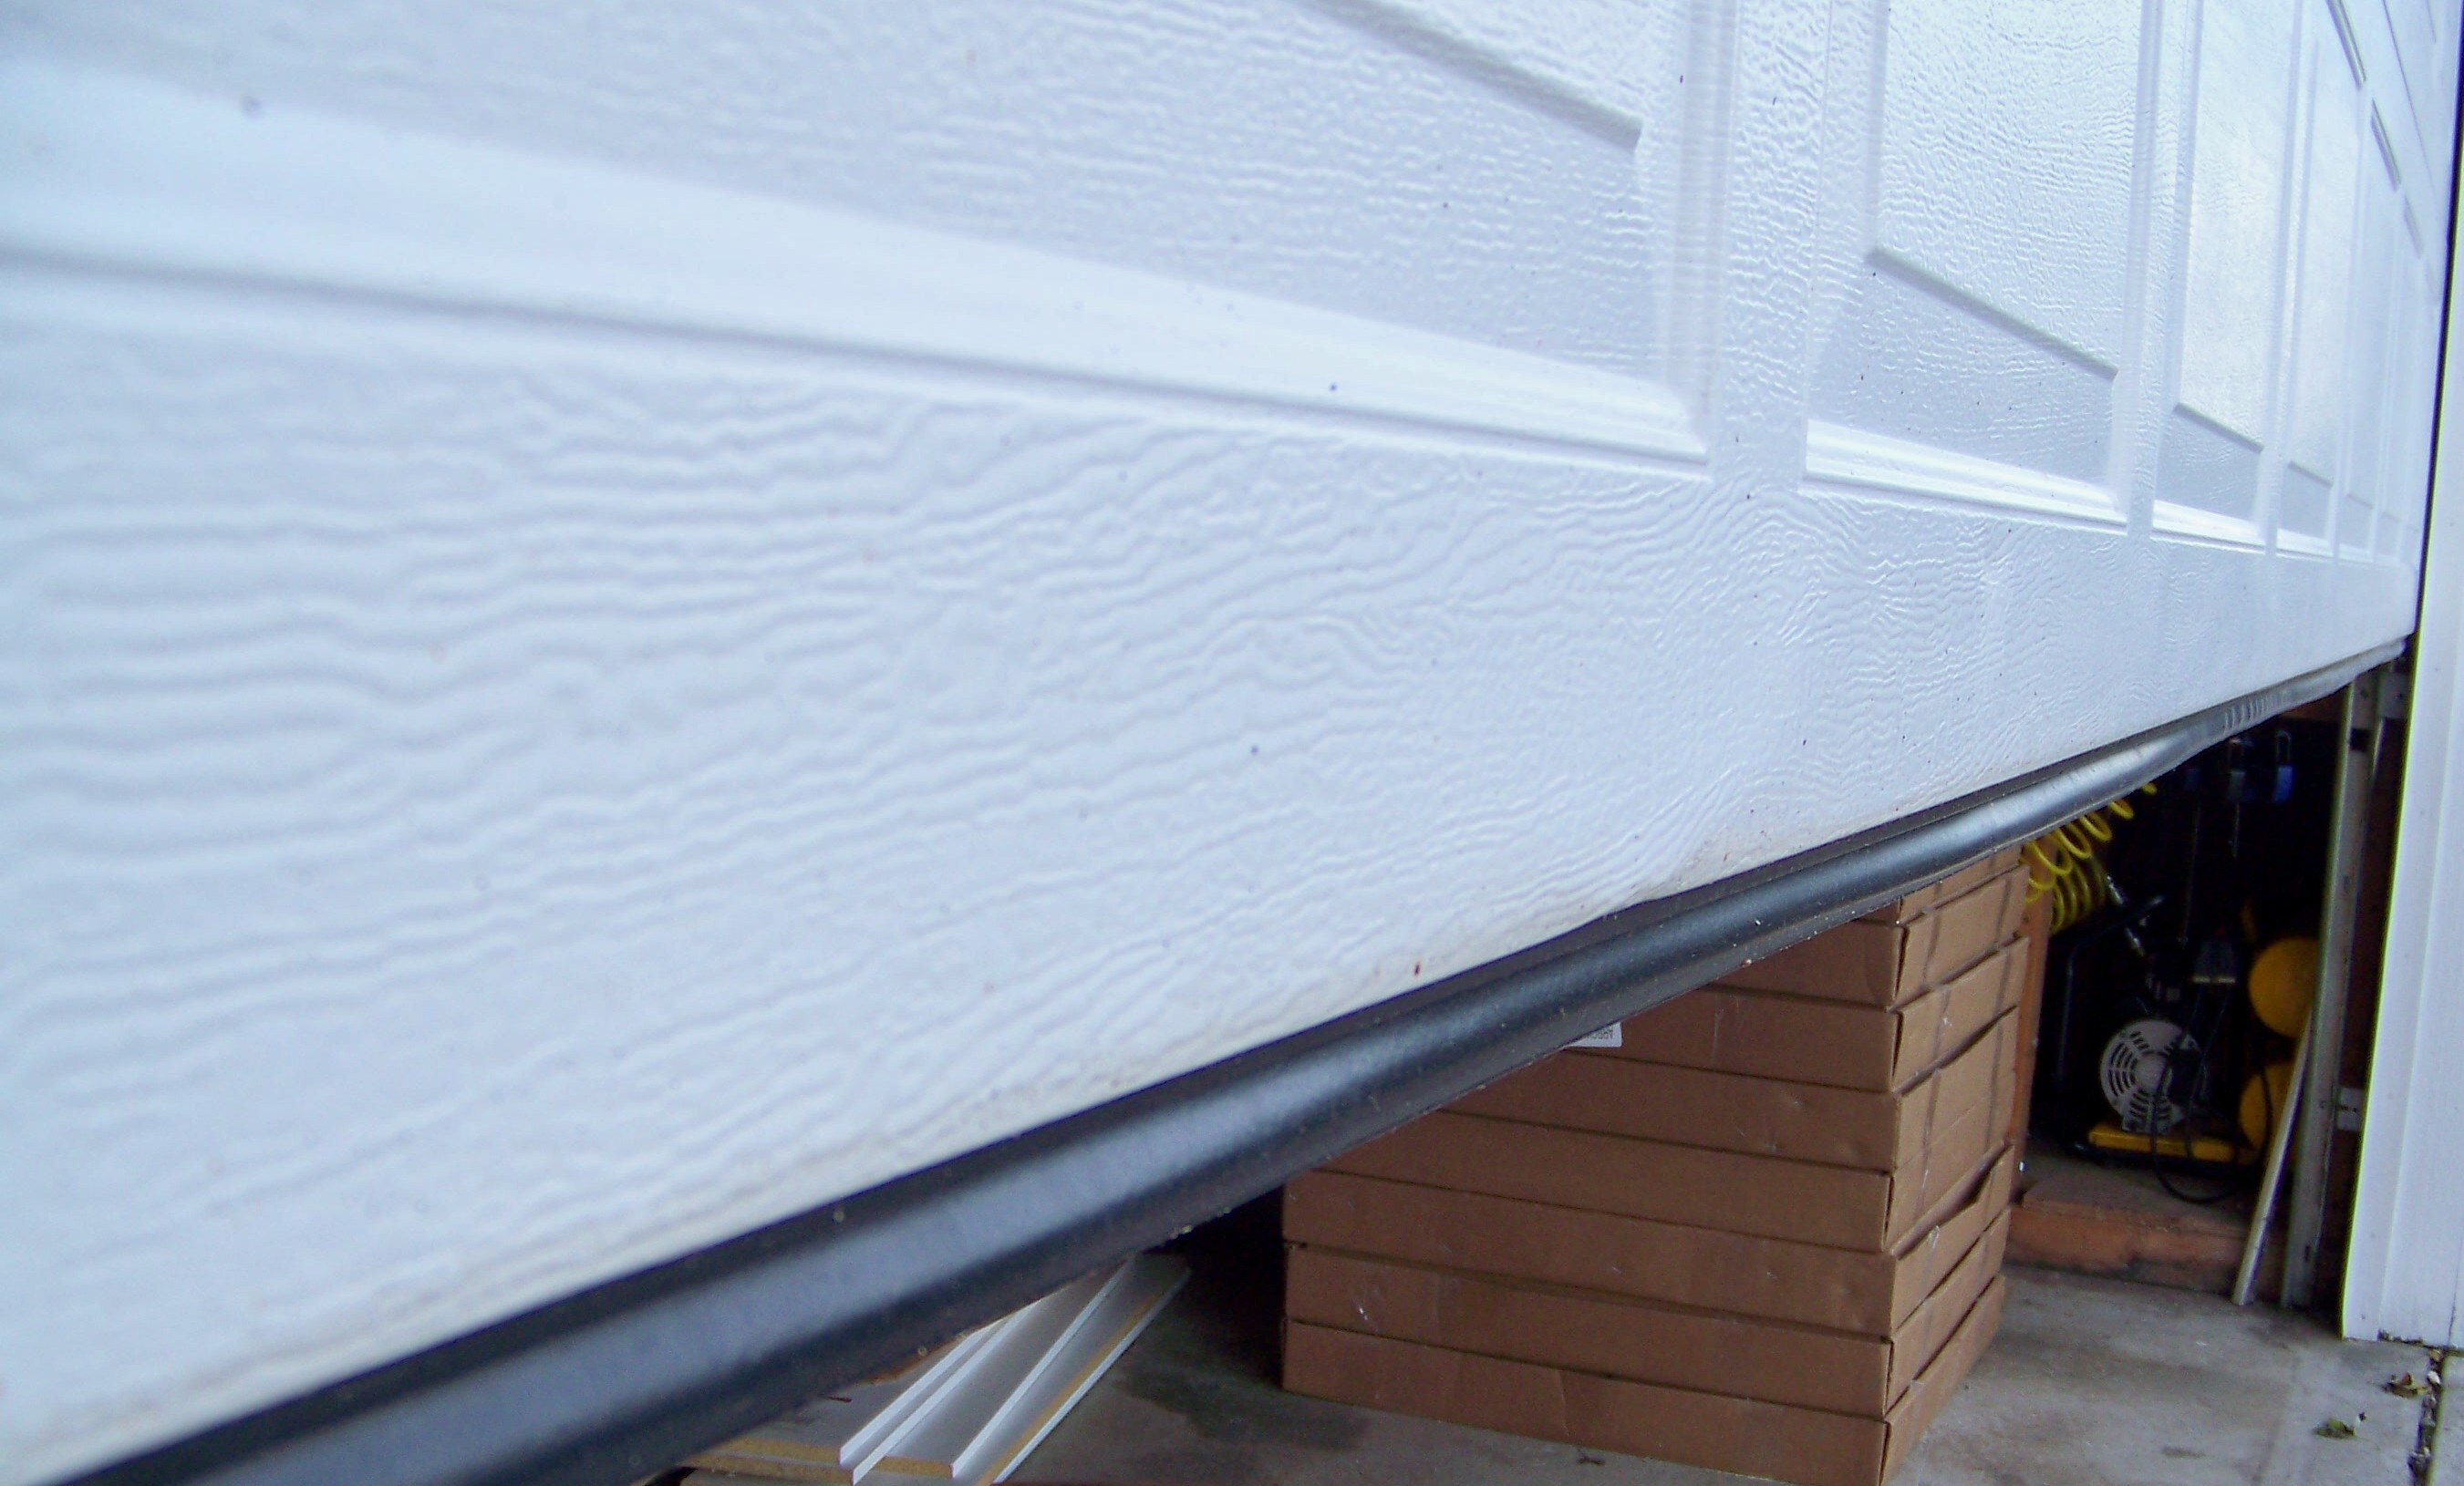 Installing Garage Door Bottom Seal Kits, How To Install Garage Door Weather Stripping Bottom